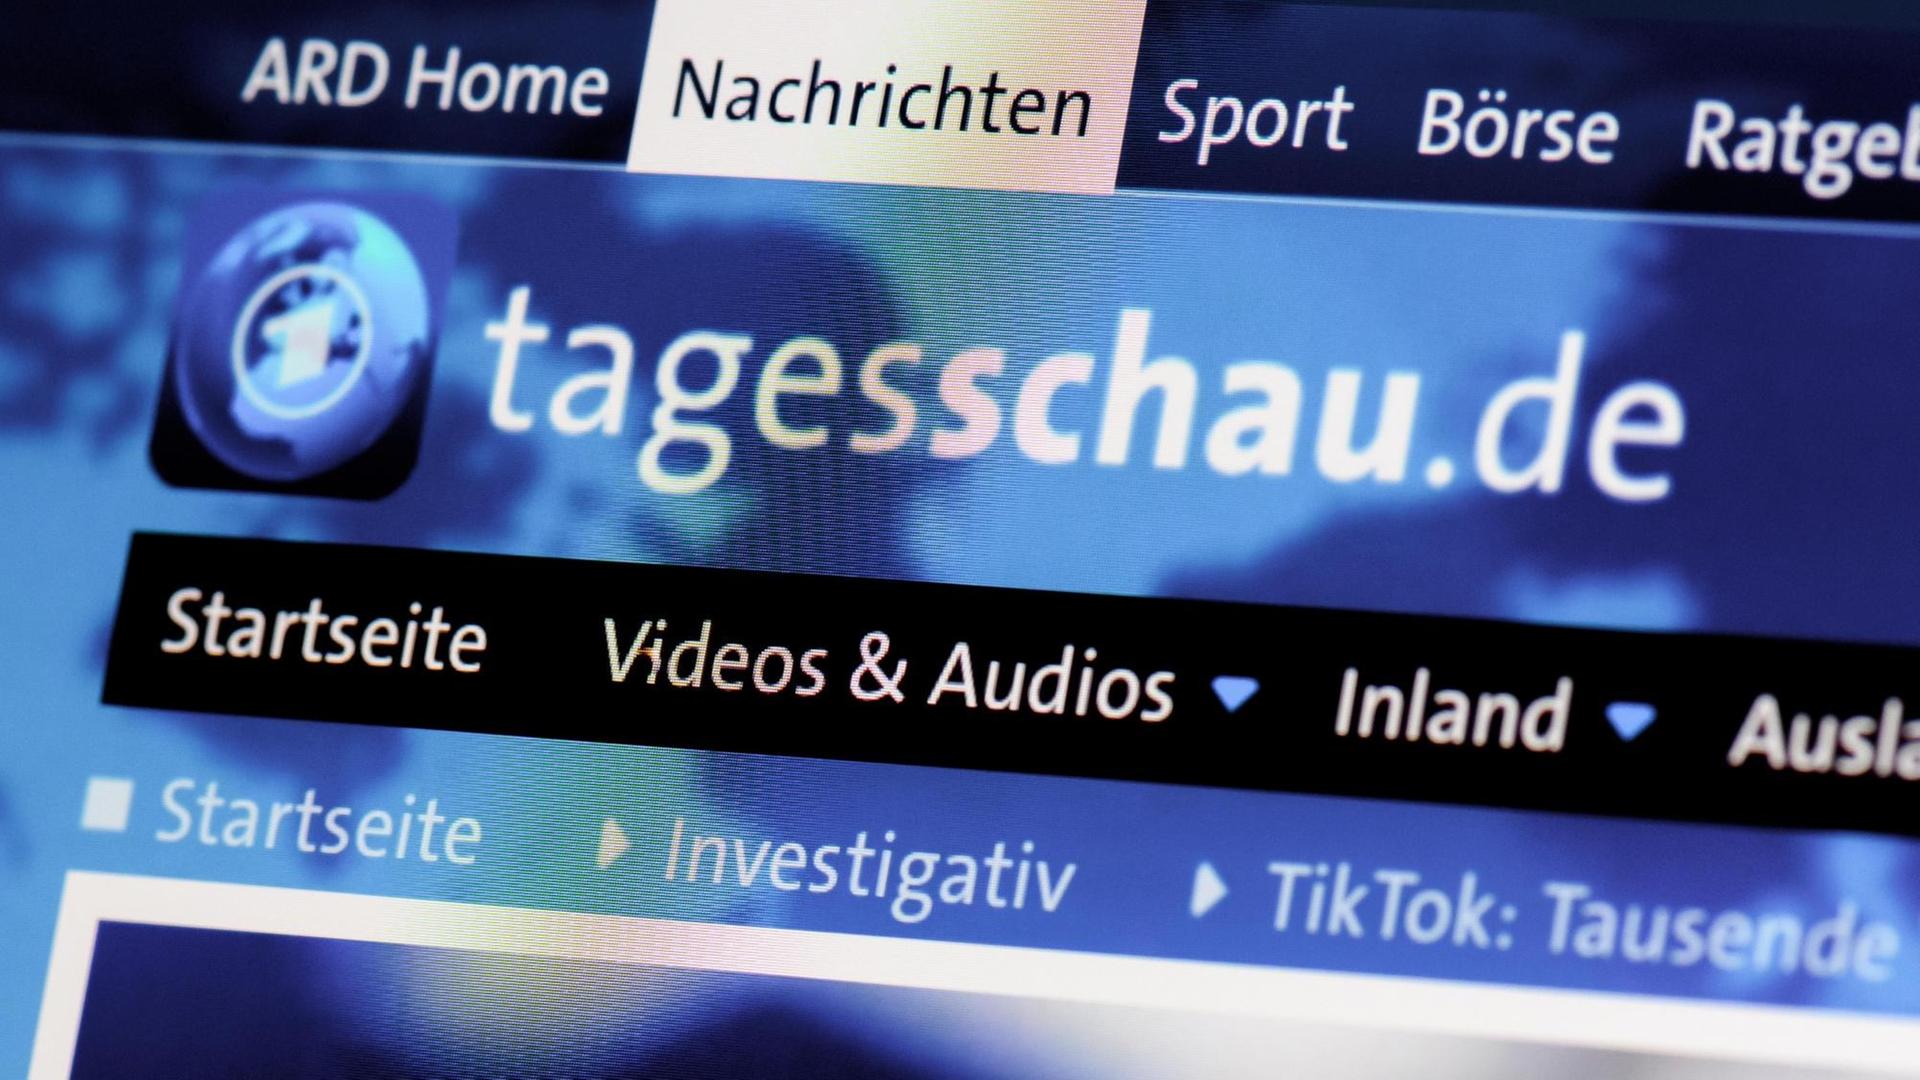 "Tagesschau.de" Nahansicht der Website auf einem Display.